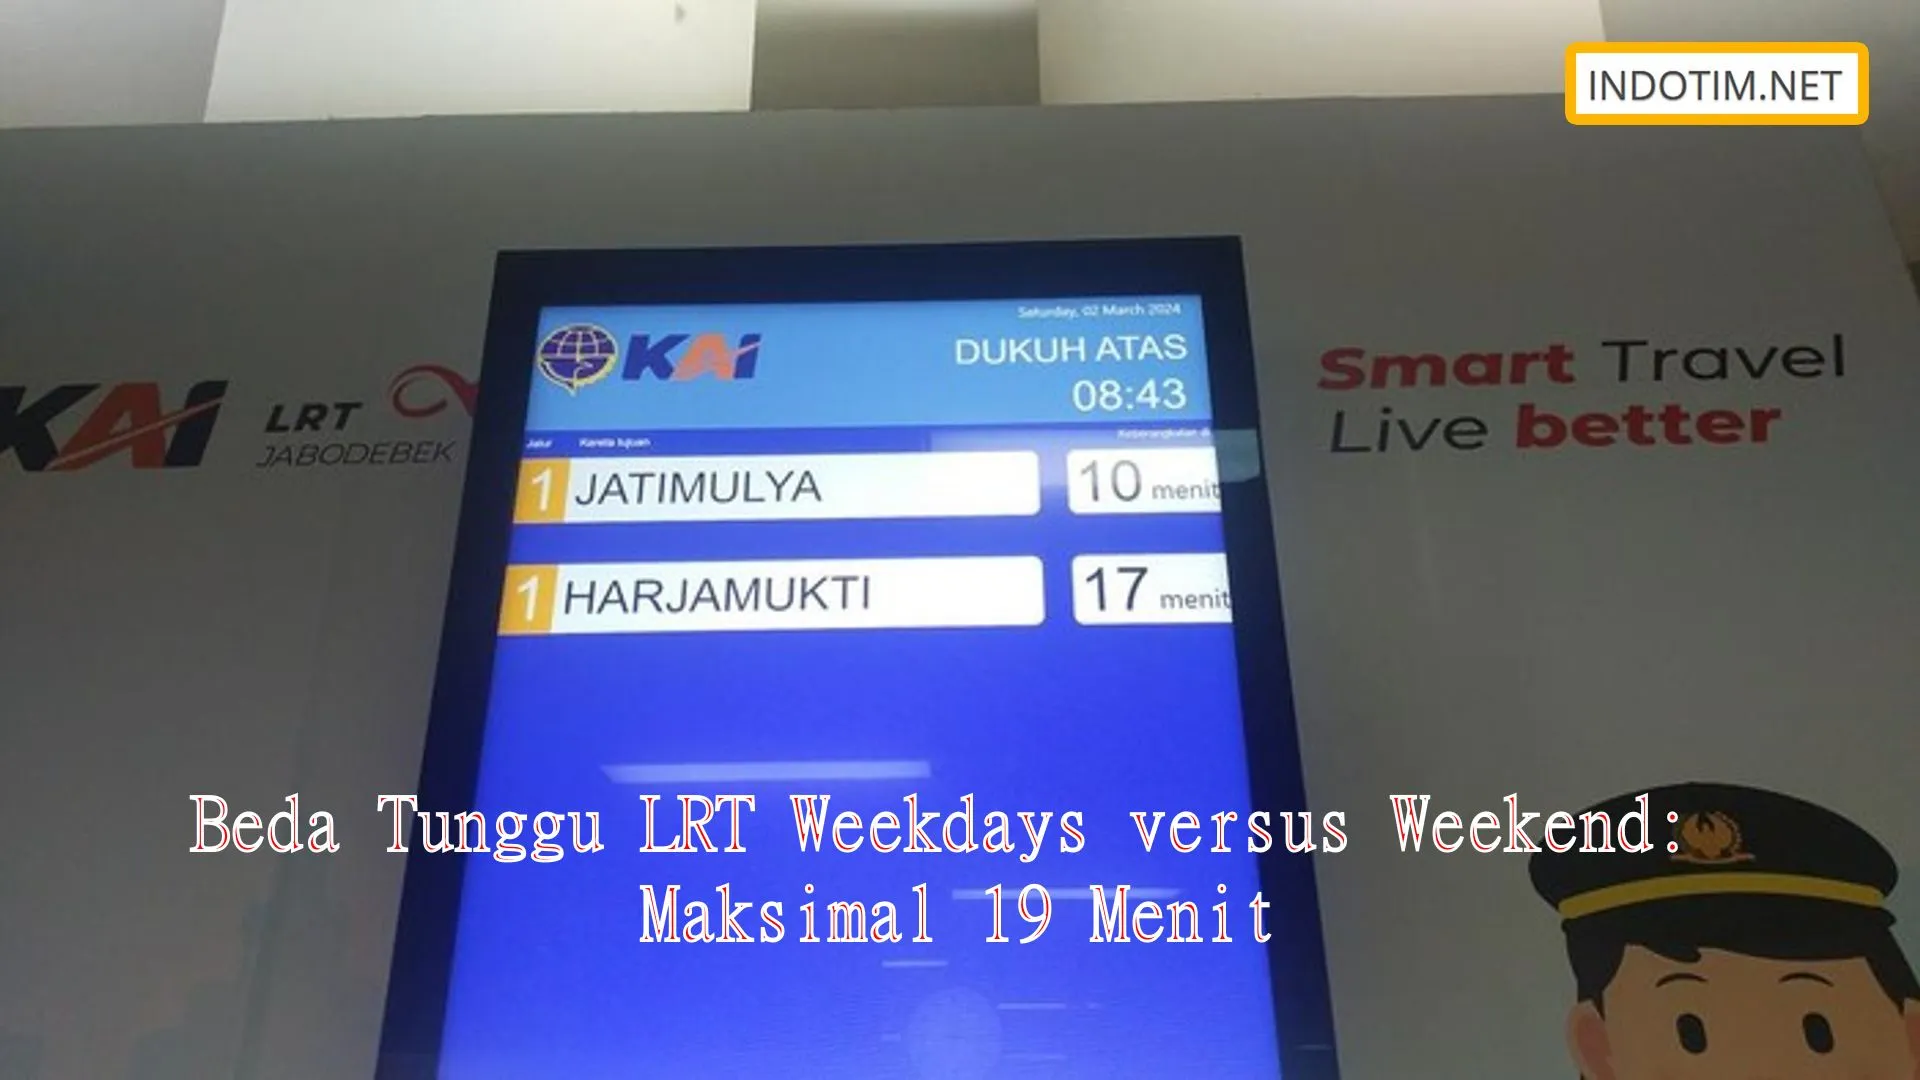 Beda Tunggu LRT Weekdays versus Weekend: Maksimal 19 Menit